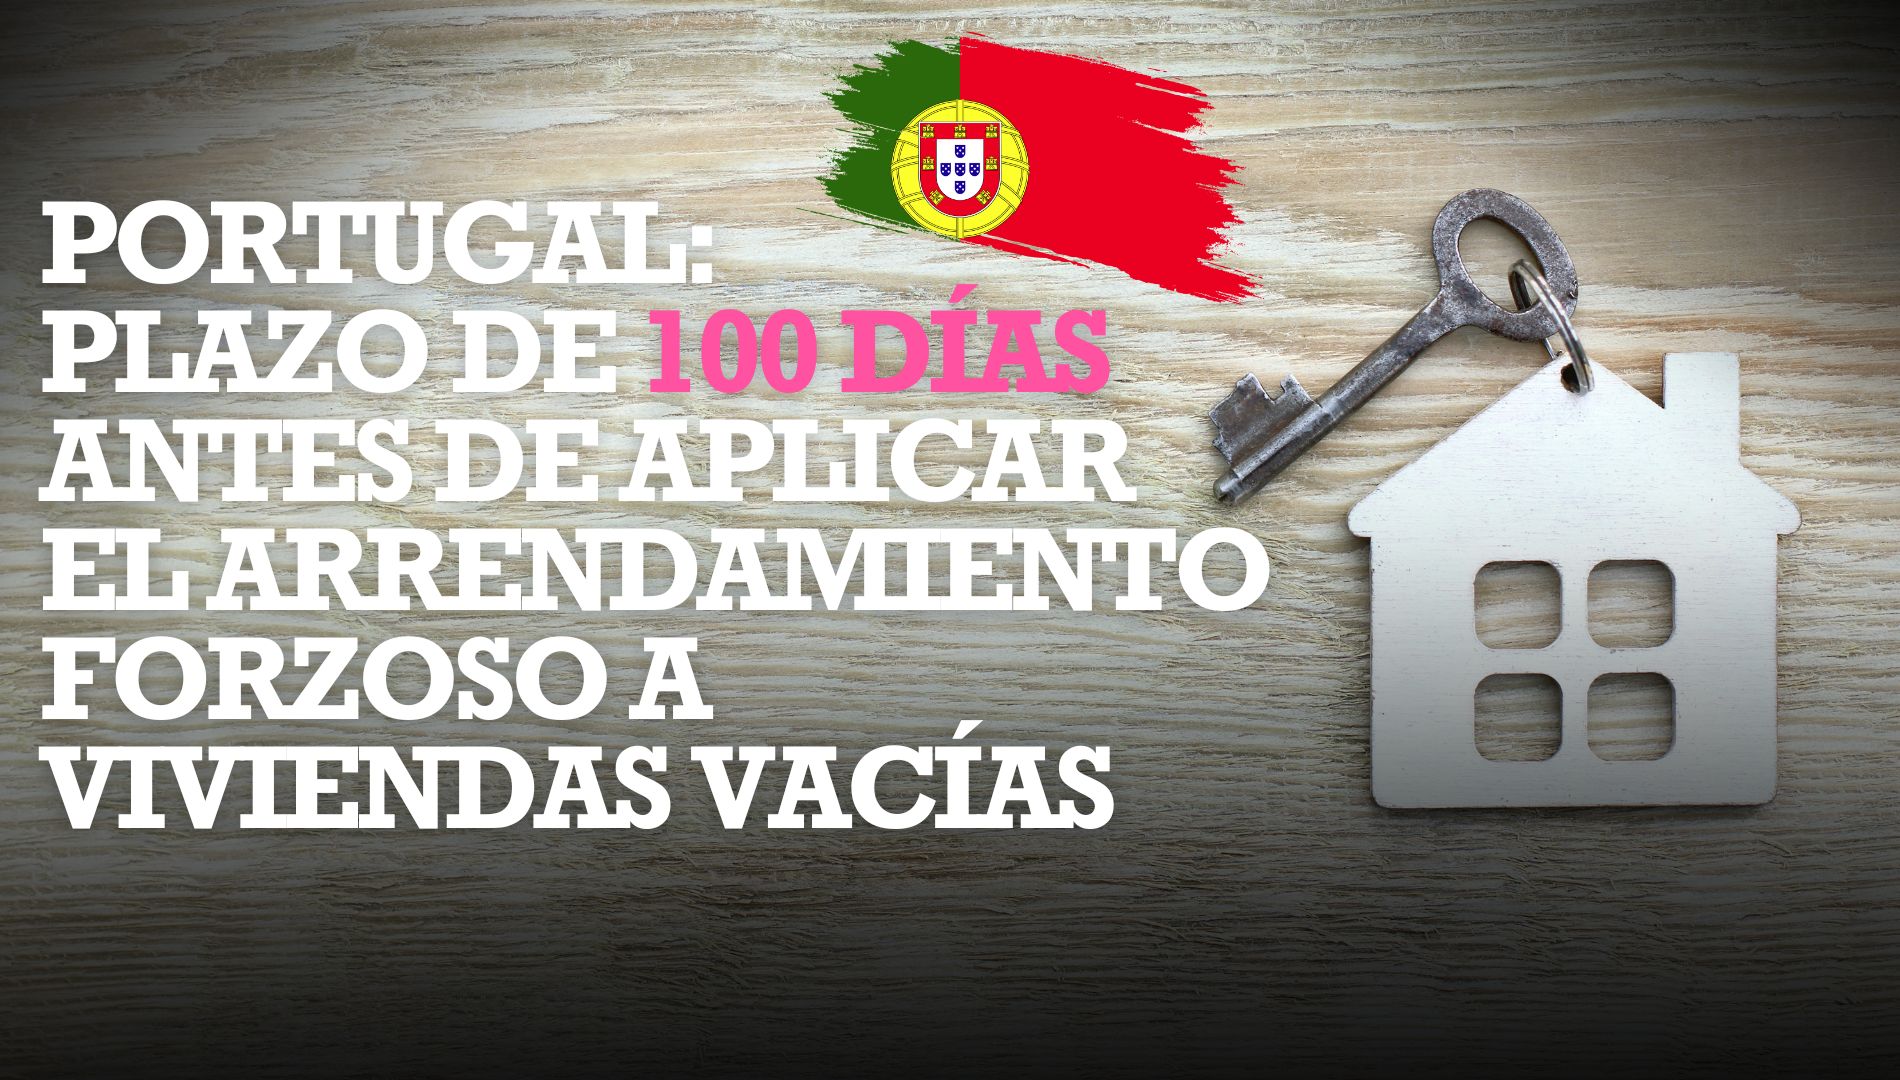 Portugal establece un plazo de 100 días para alquilar viviendas vacías antes de aplicar el arrendamiento forzoso